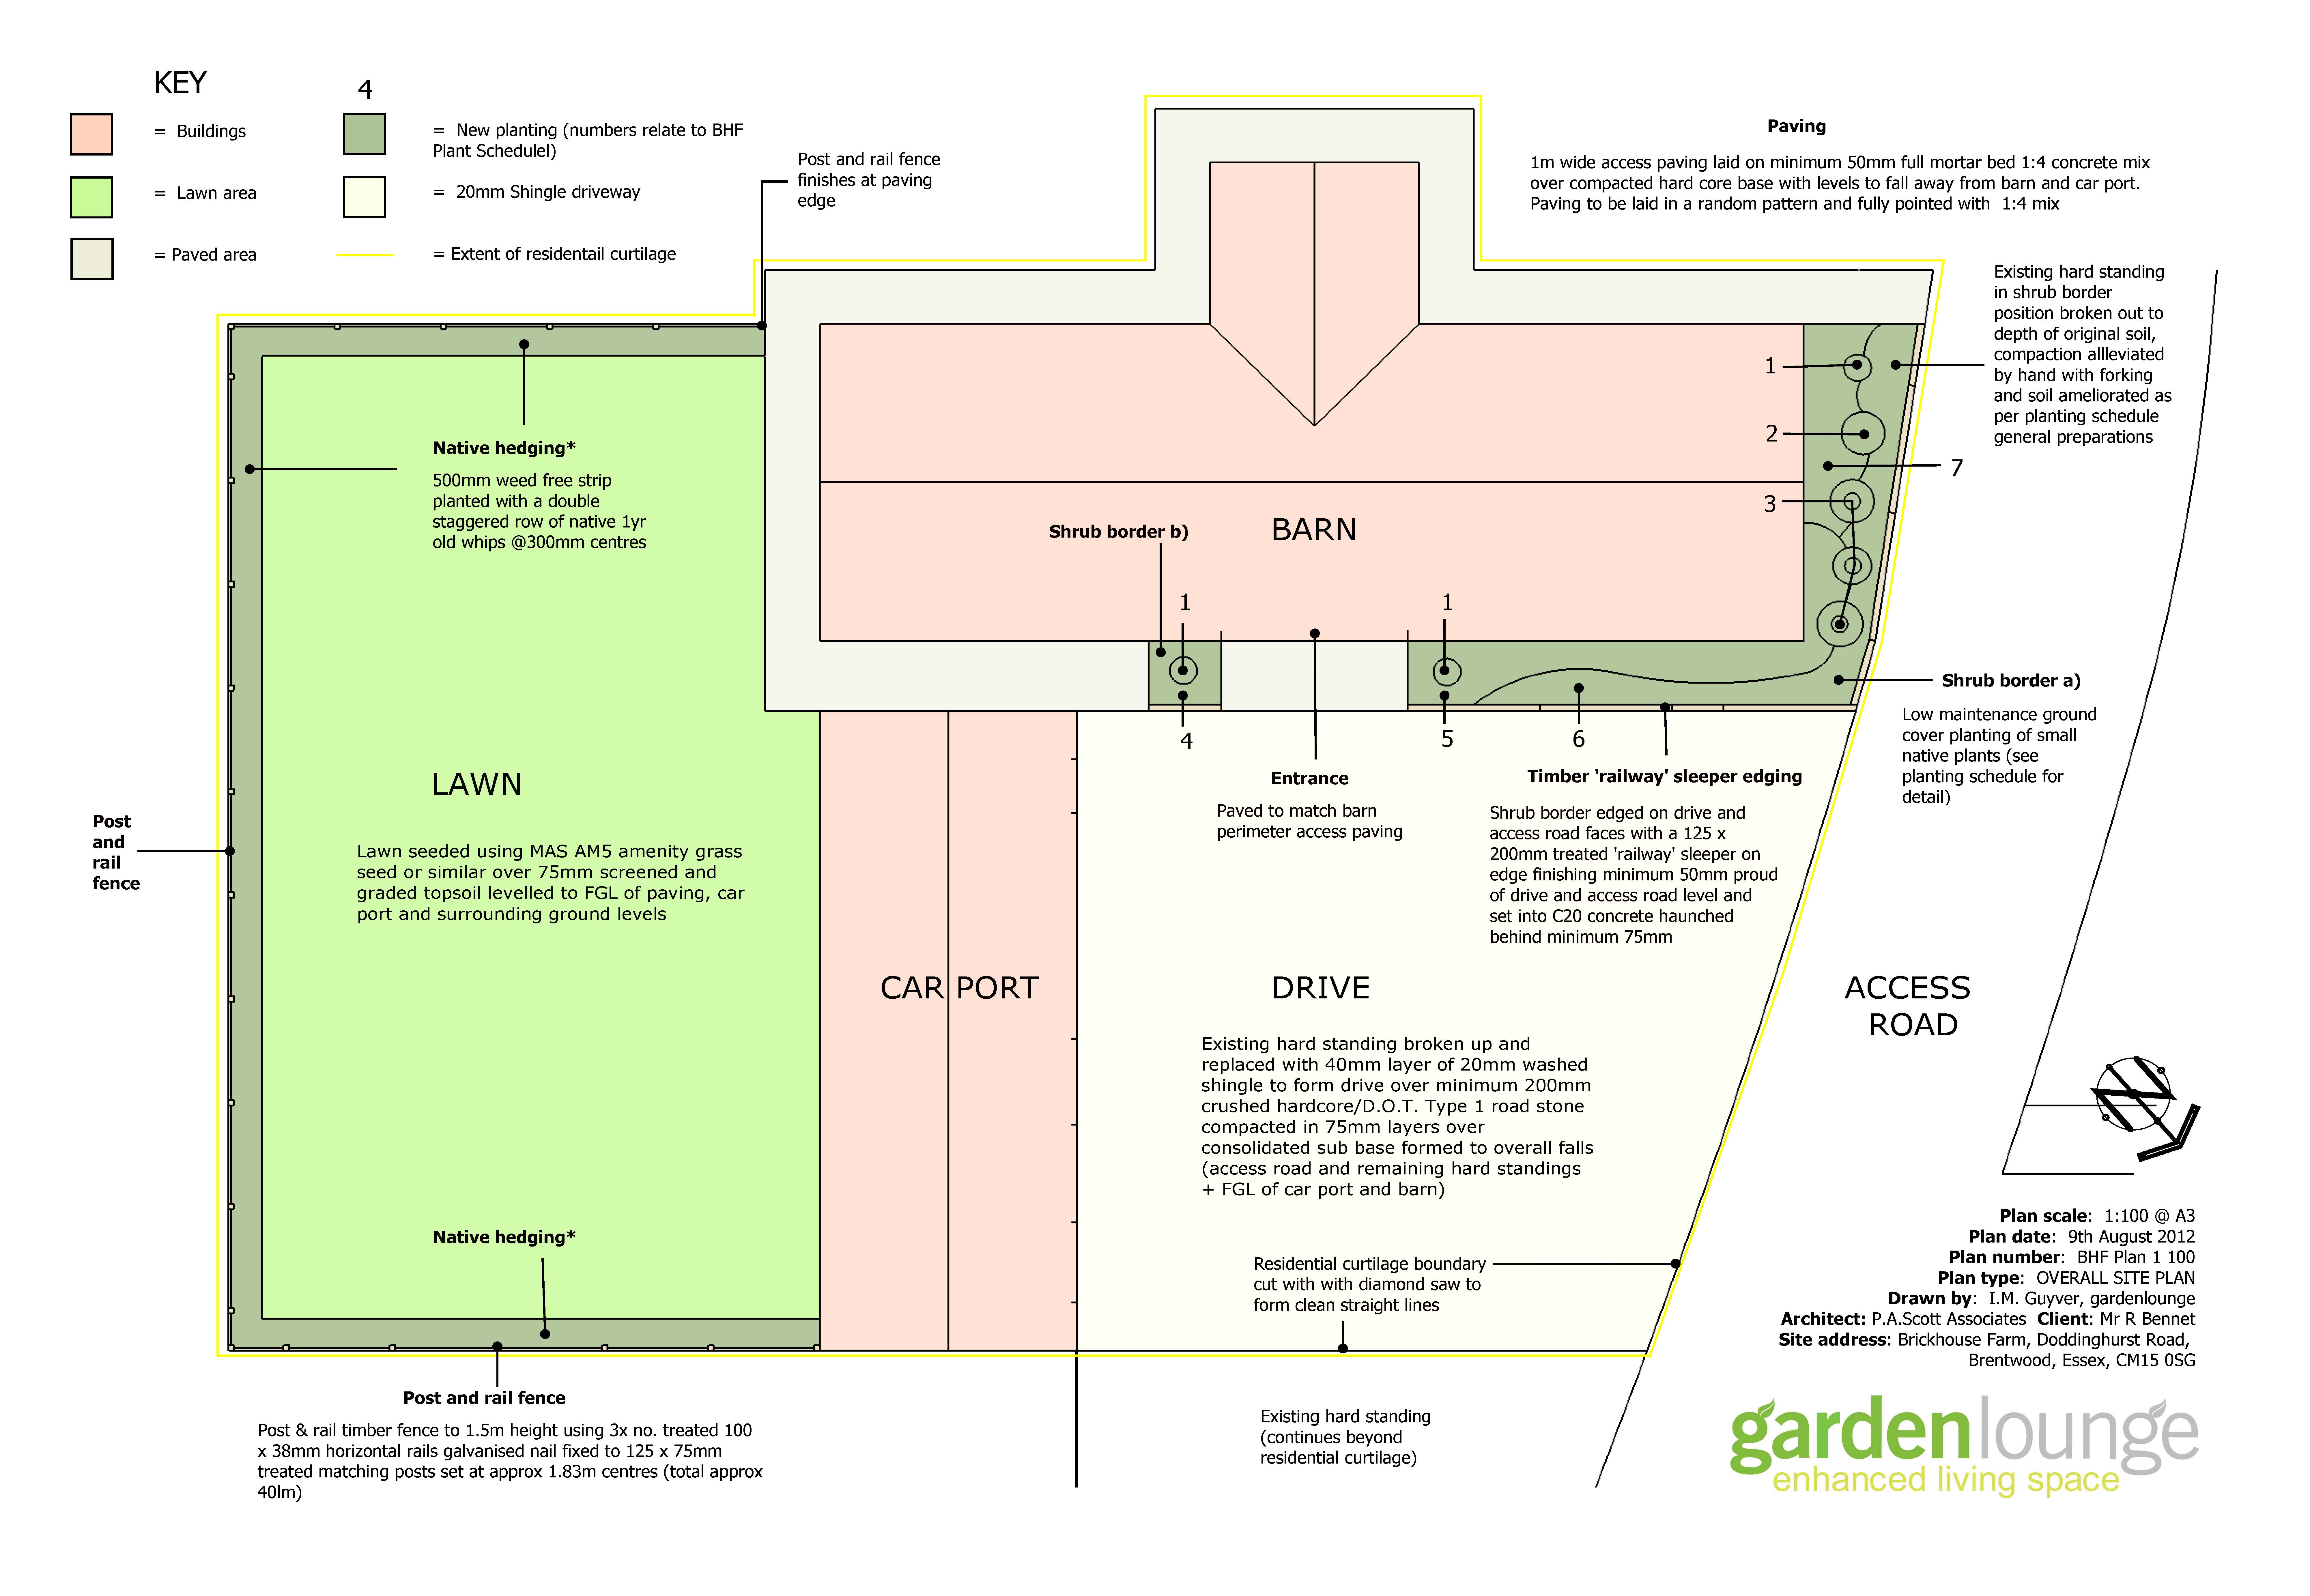 Plan view of a newbuld landscape deisgn scheme